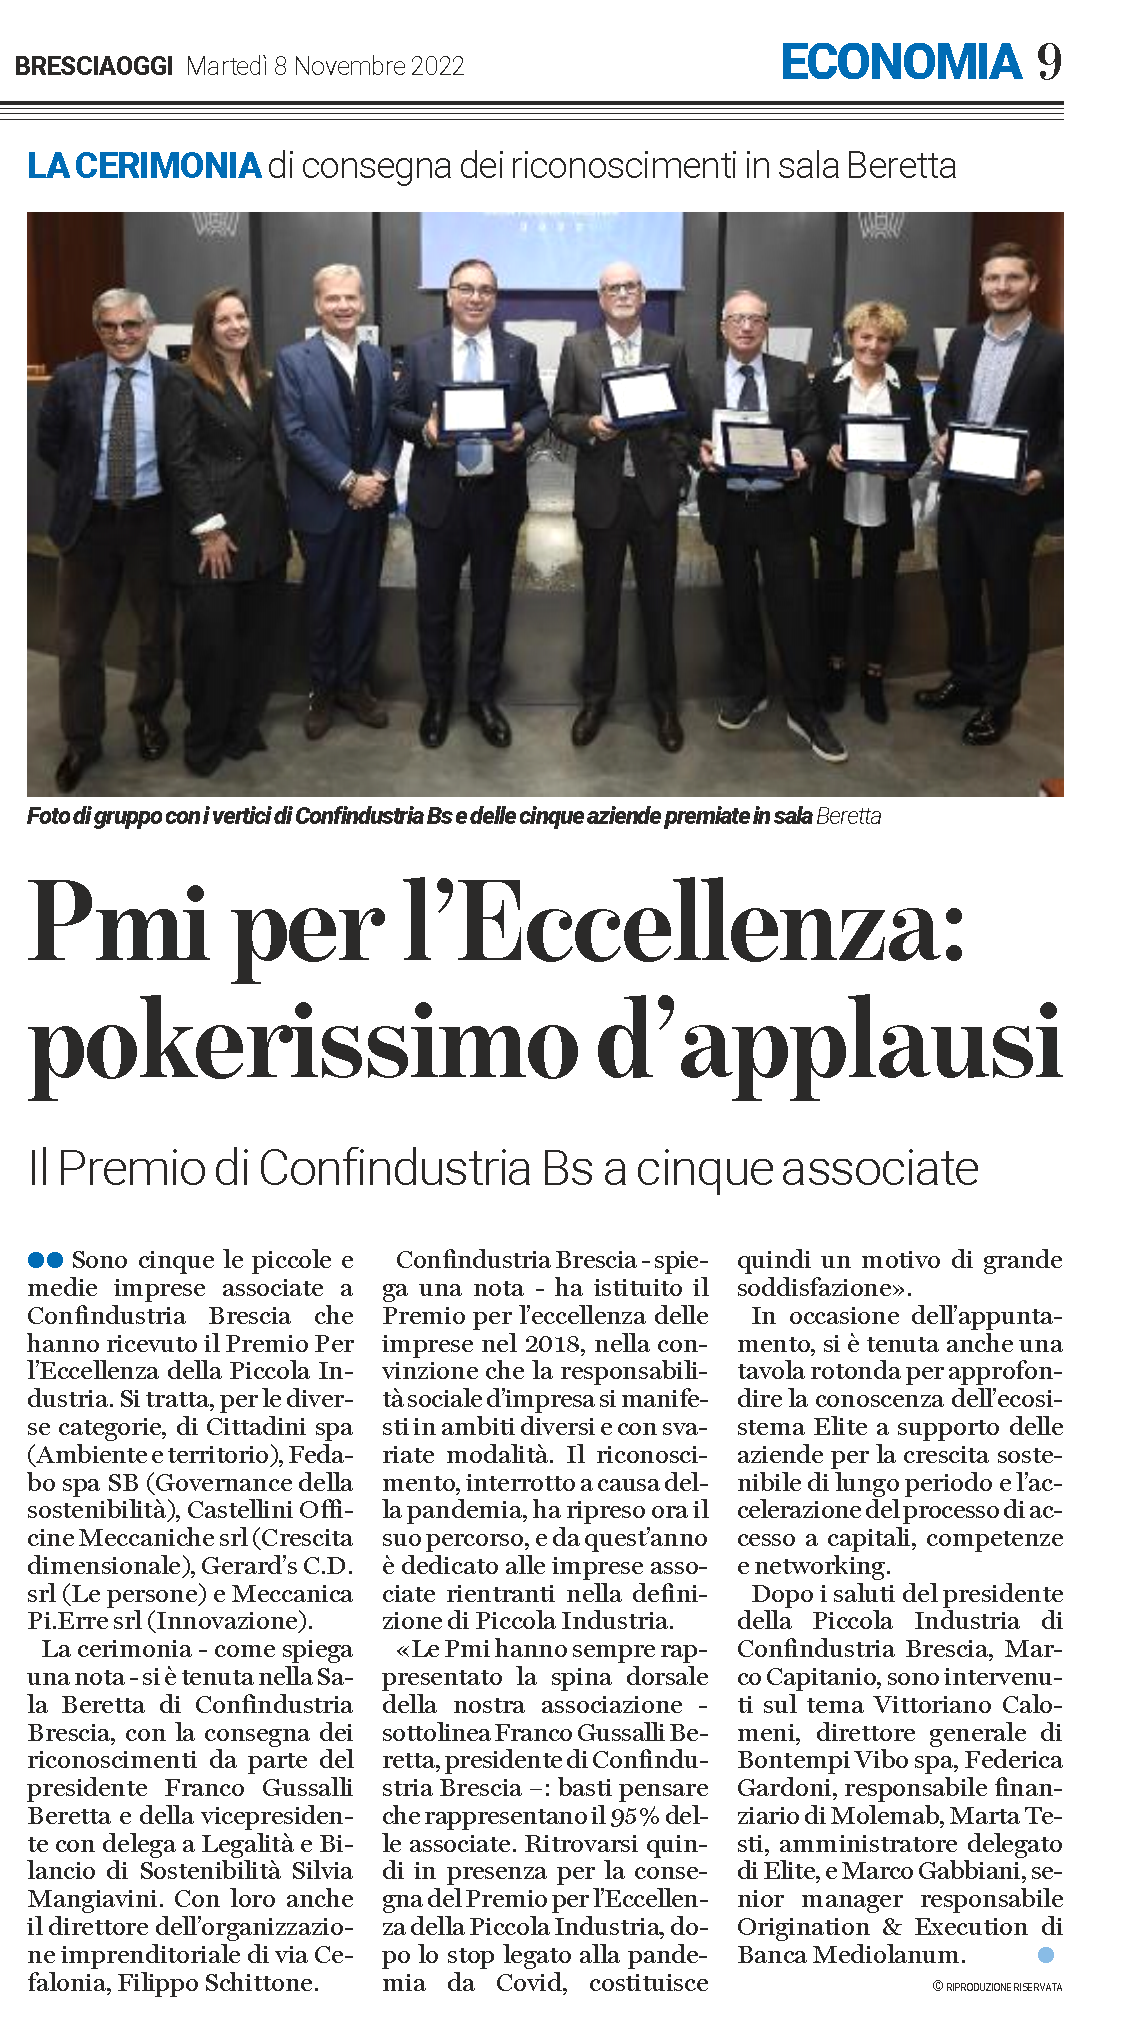 Bresciaoggi - articolo Premio Eccellenza PMI 2022